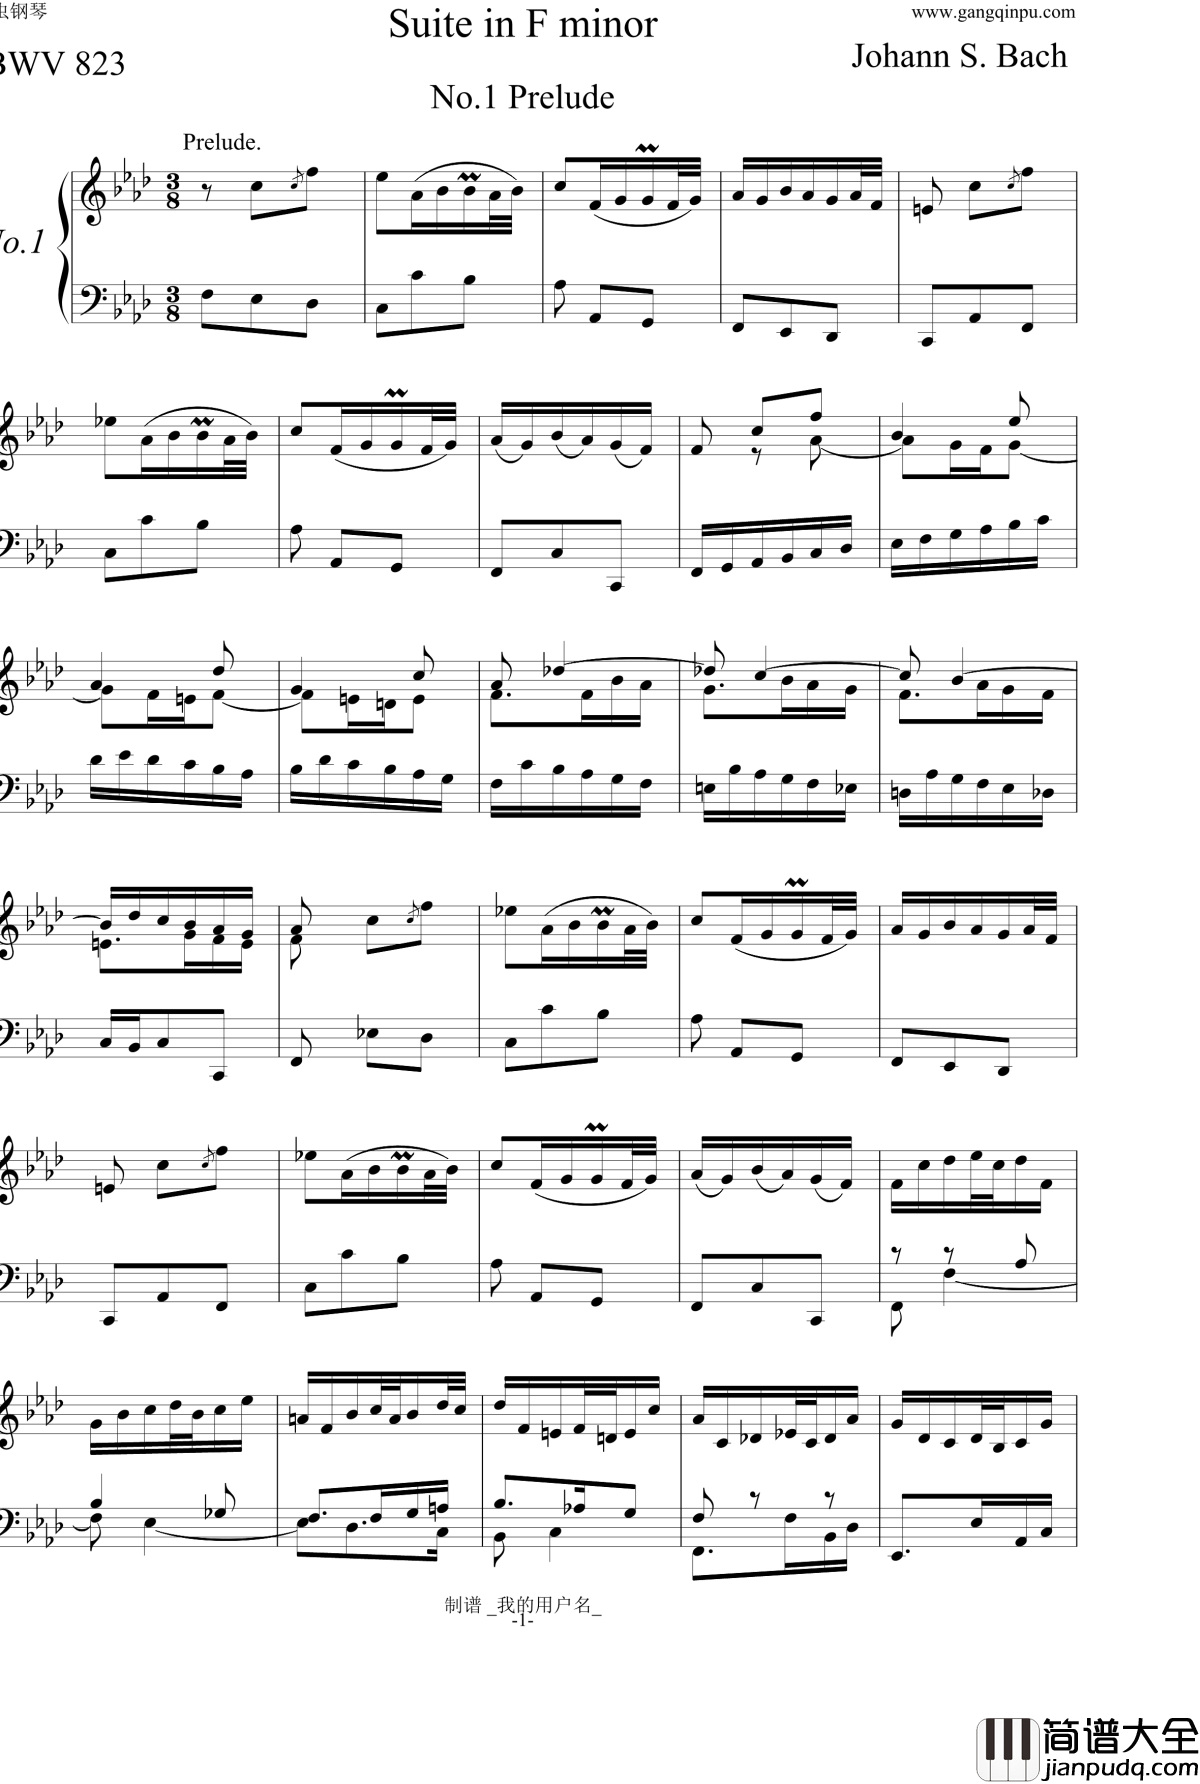 BWV823_No.1前奏曲钢琴谱_巴赫初级钢琴曲集最后一首_P.E.Bach